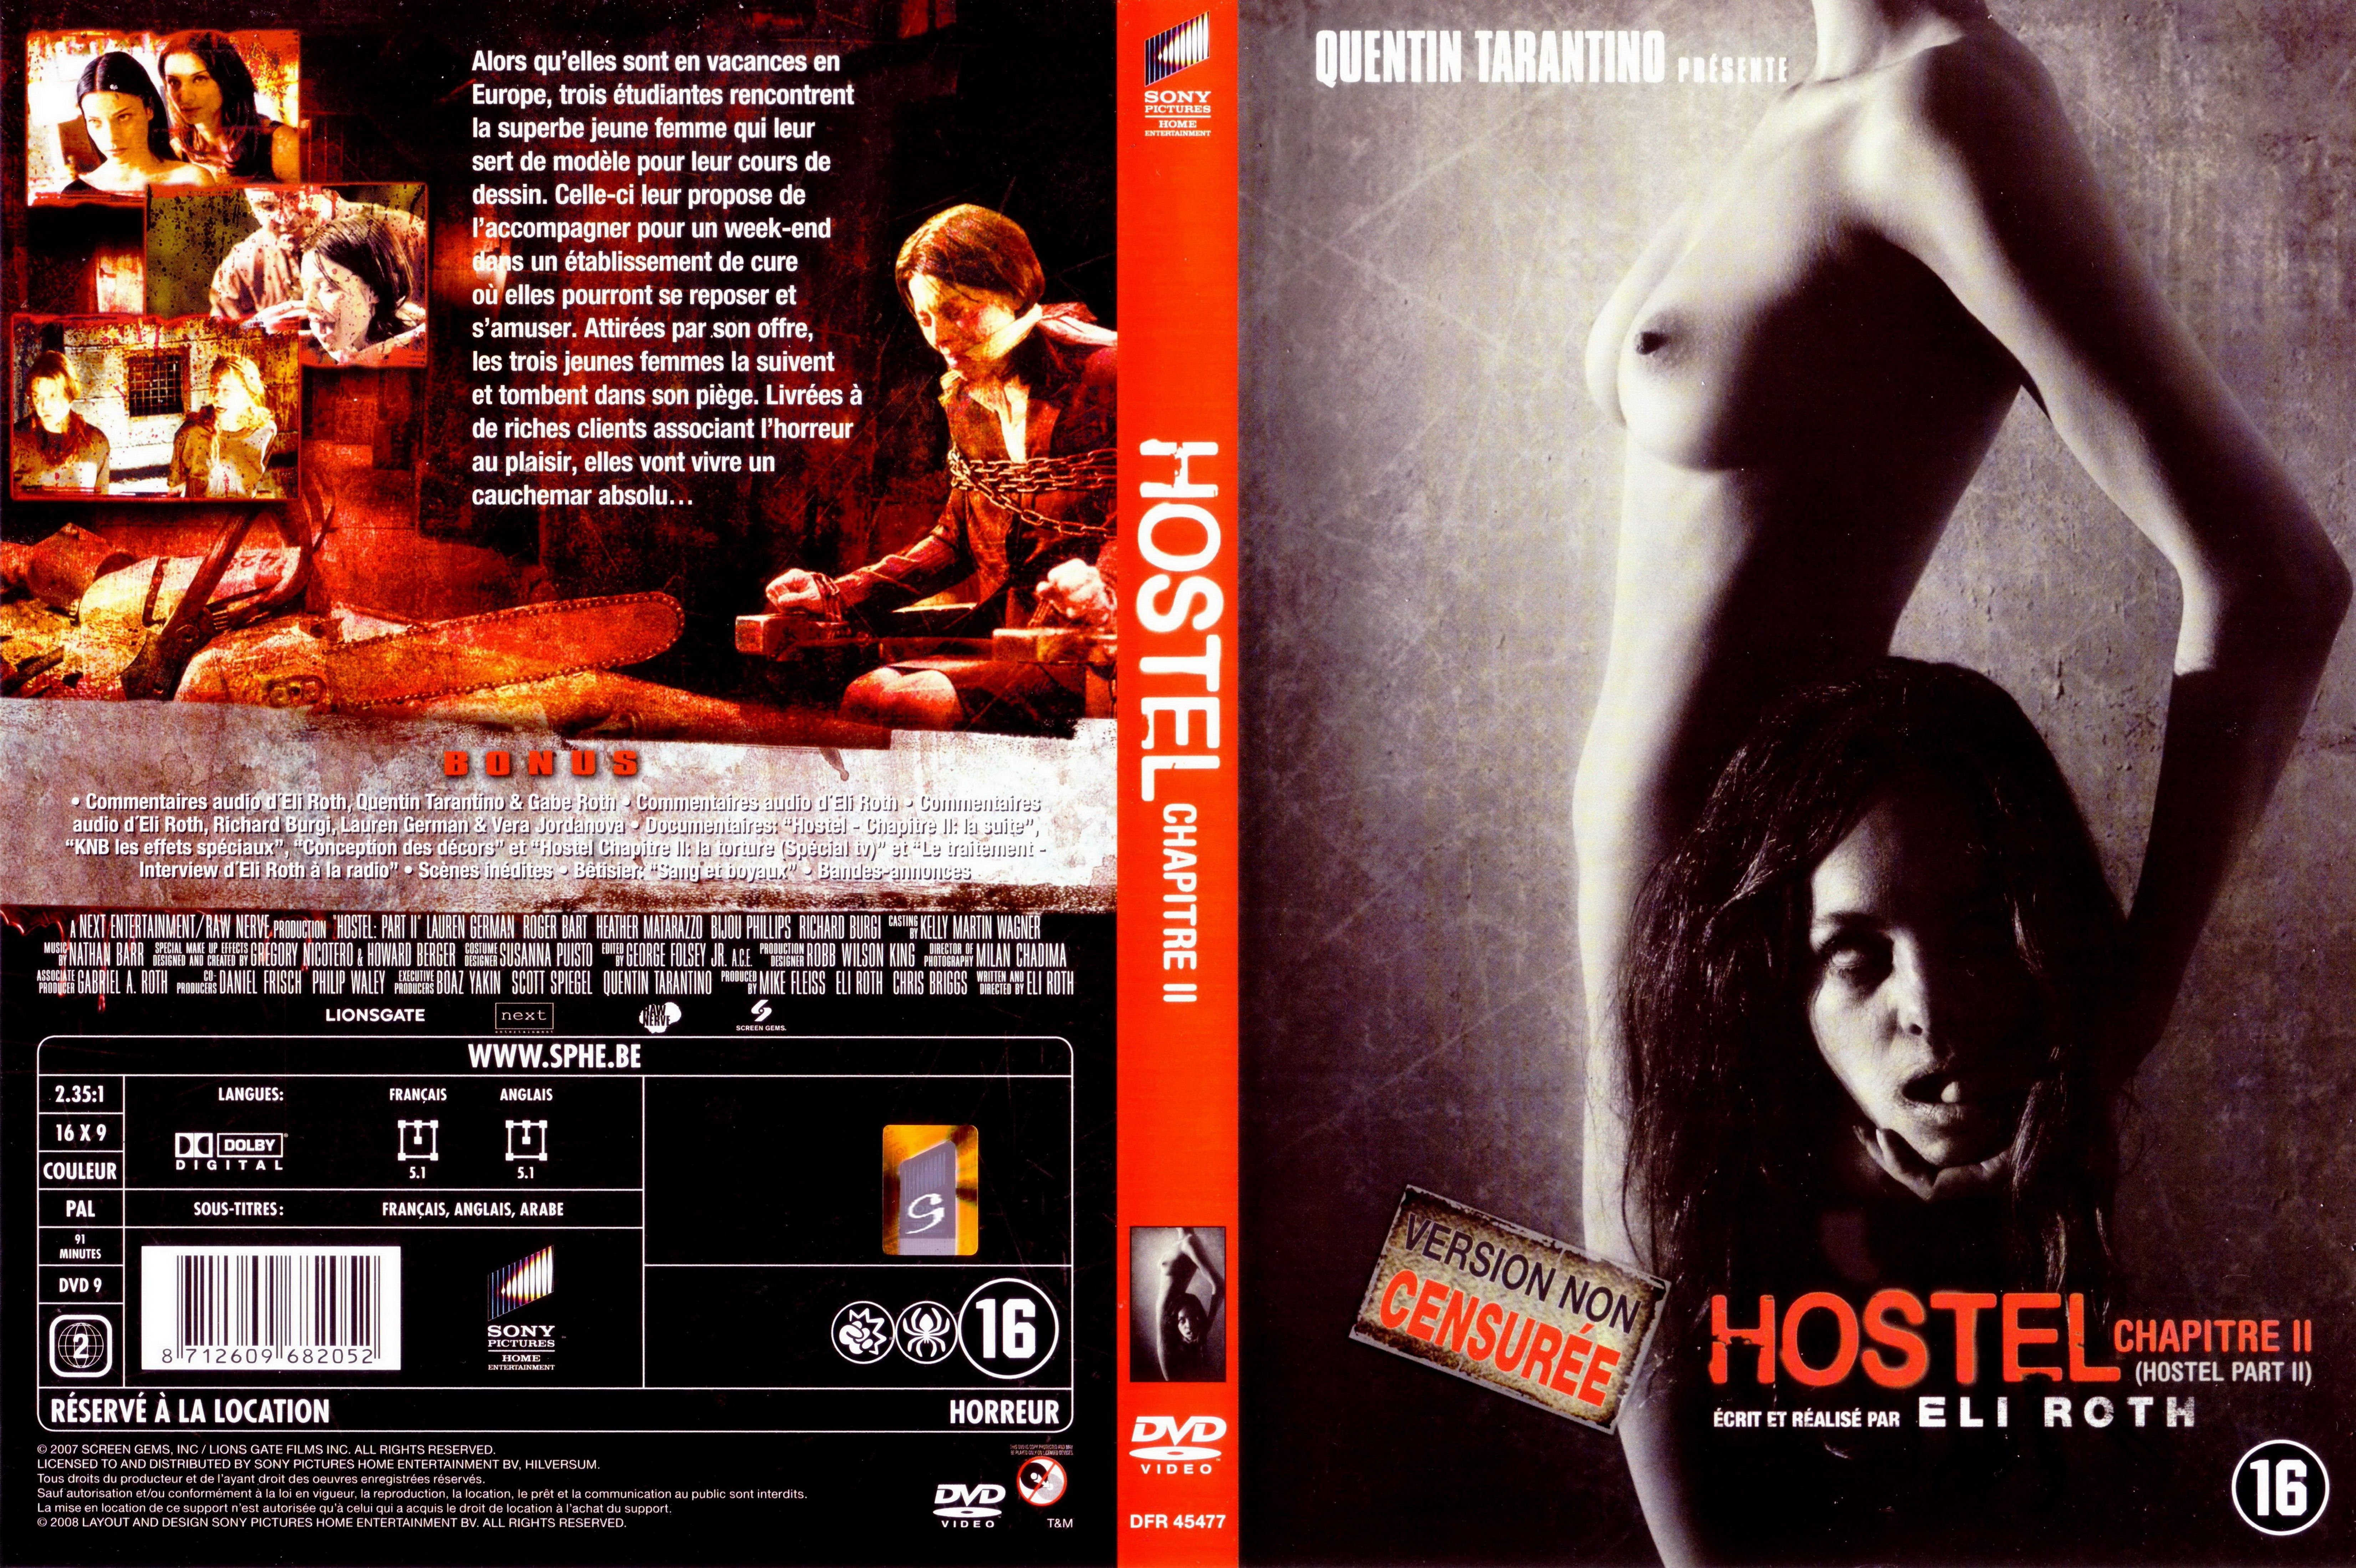 Jaquette DVD Hostel 2 v2